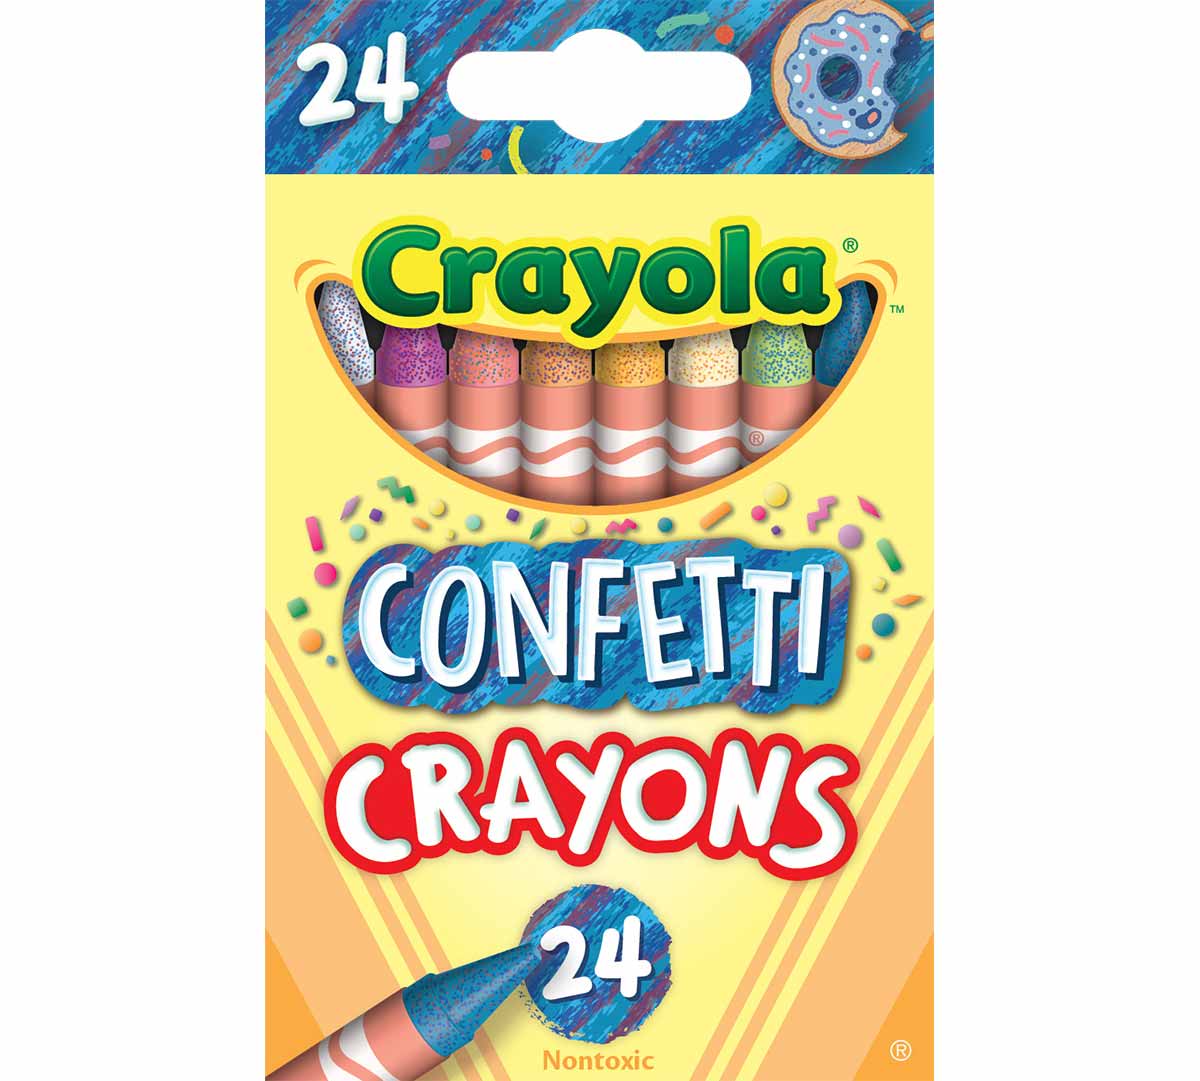 Crayola Confetti Crayons, Multi Color 24 Crayons, Crayola.com